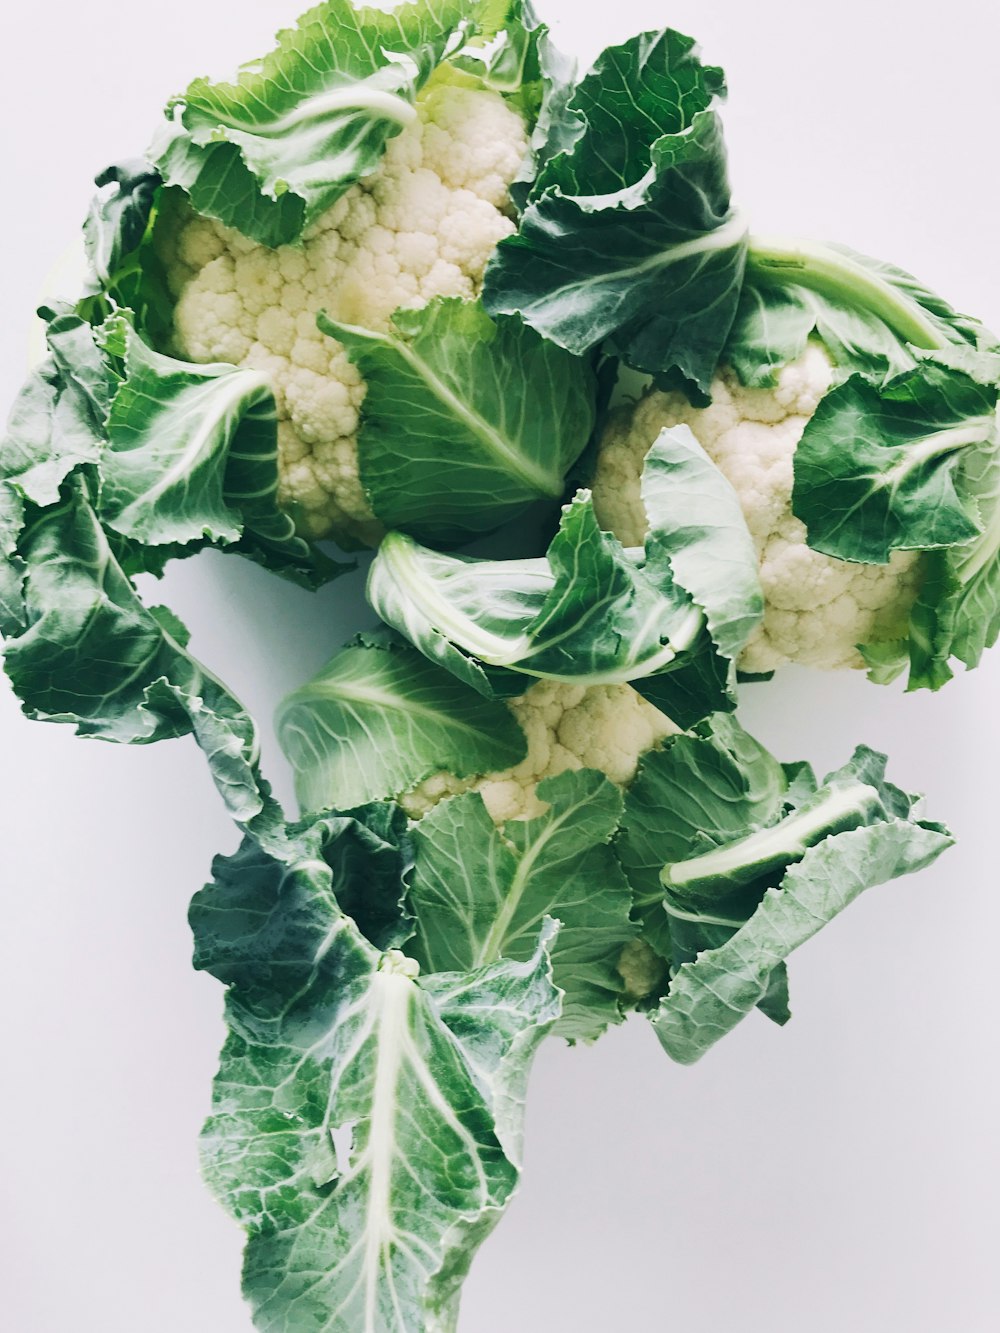 Légumes verts et blancs sur surface blanche